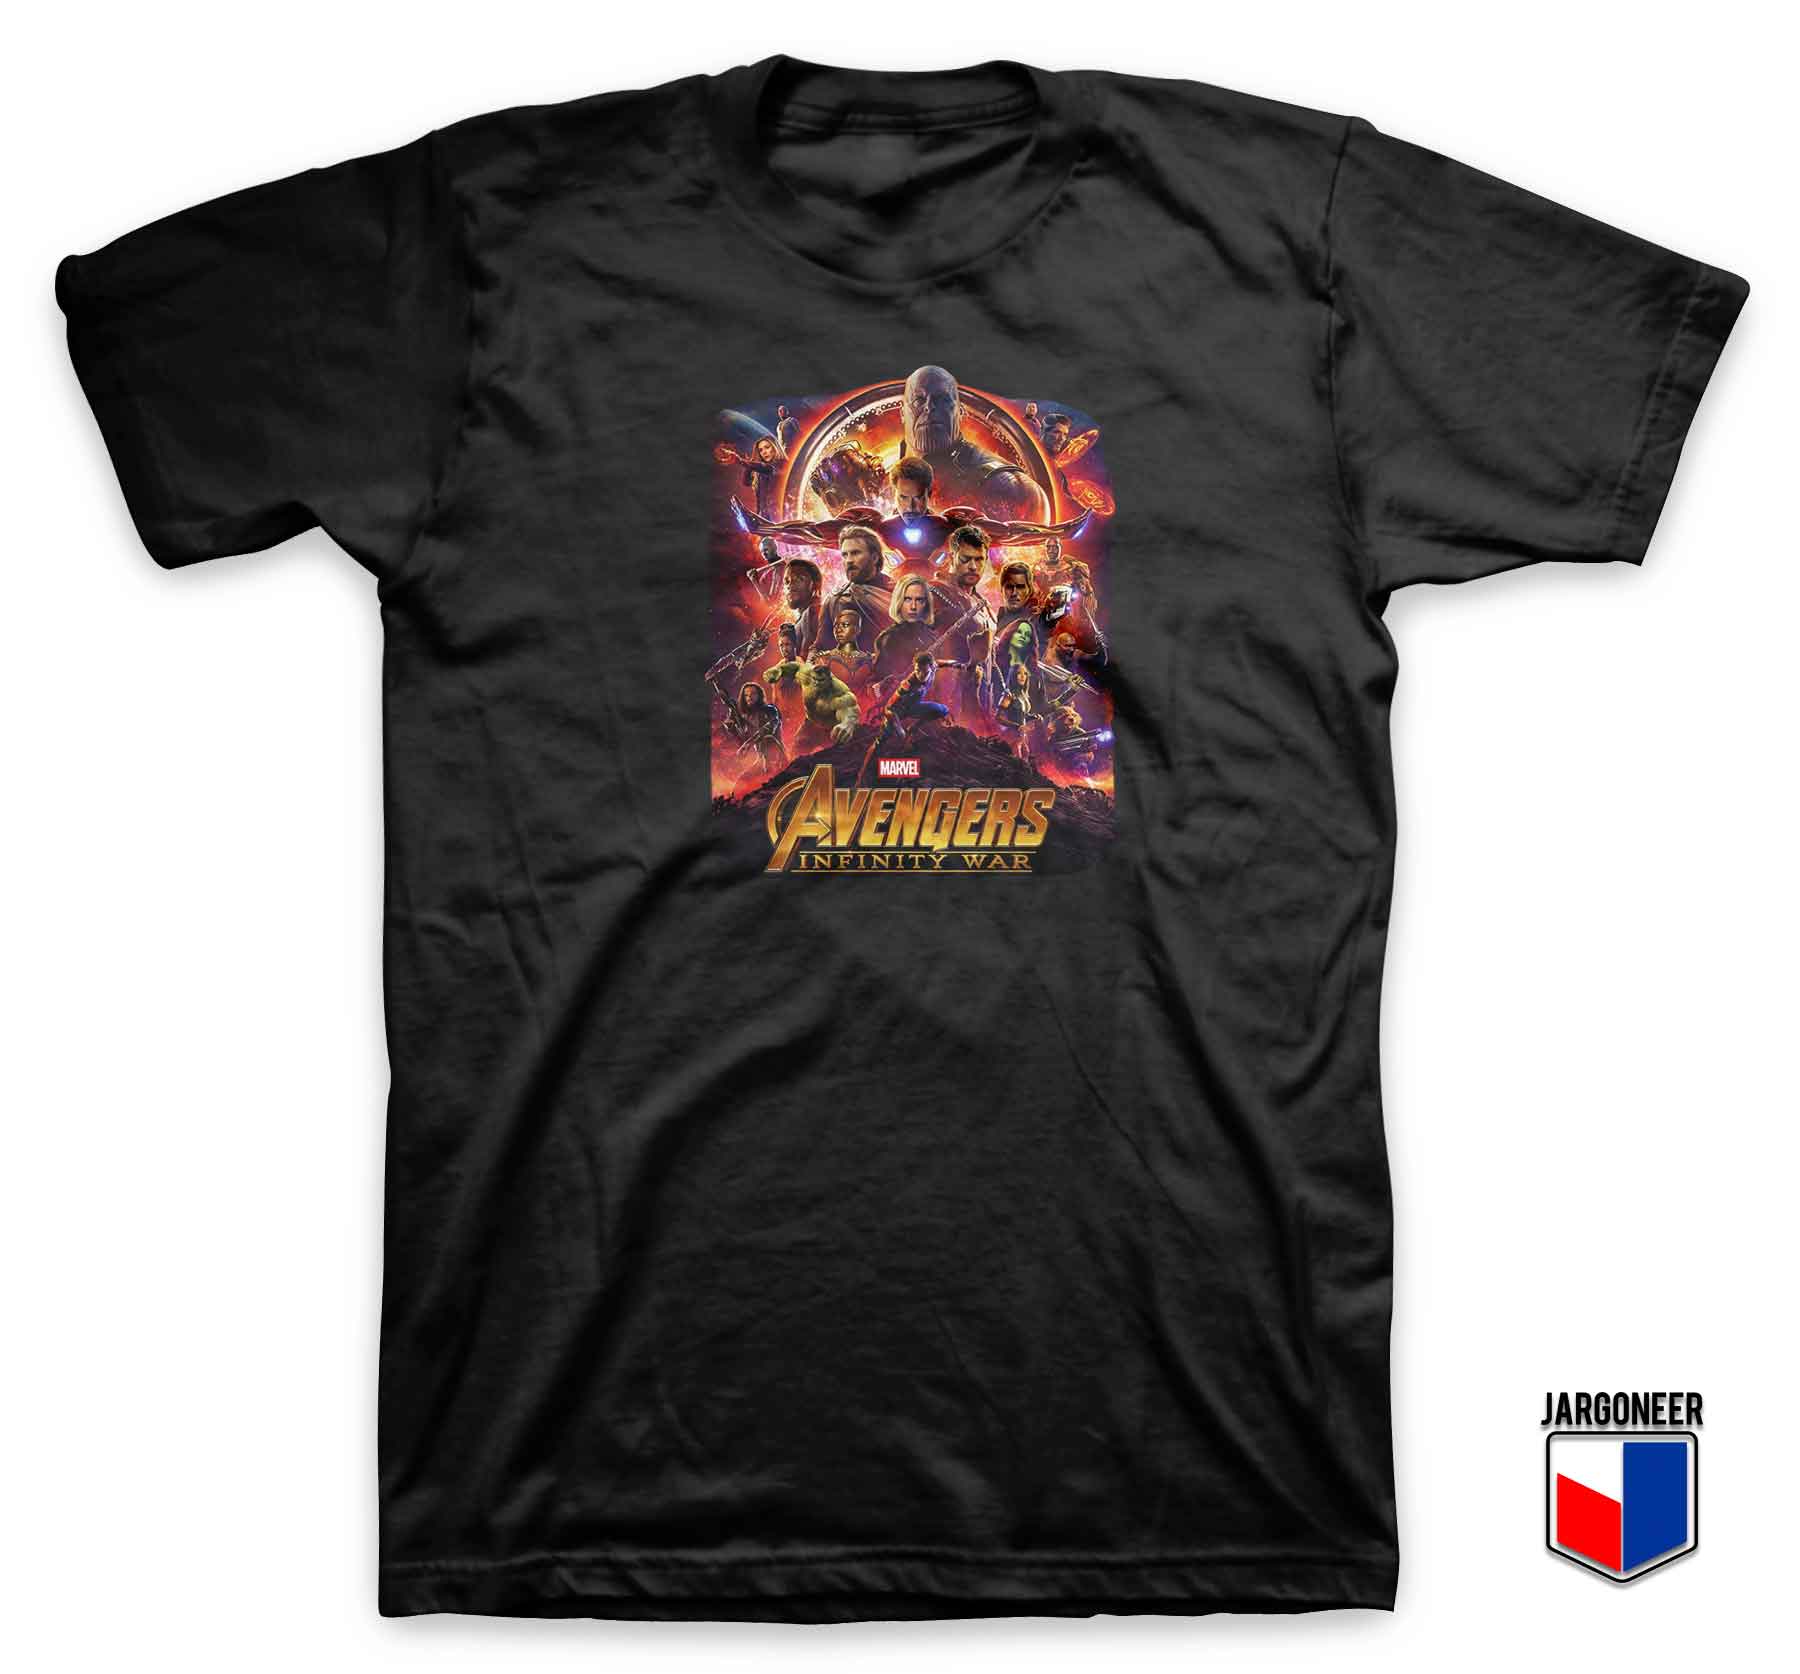 Avengers Infinity War 3 - Shop Unique Graphic Cool Shirt Designs